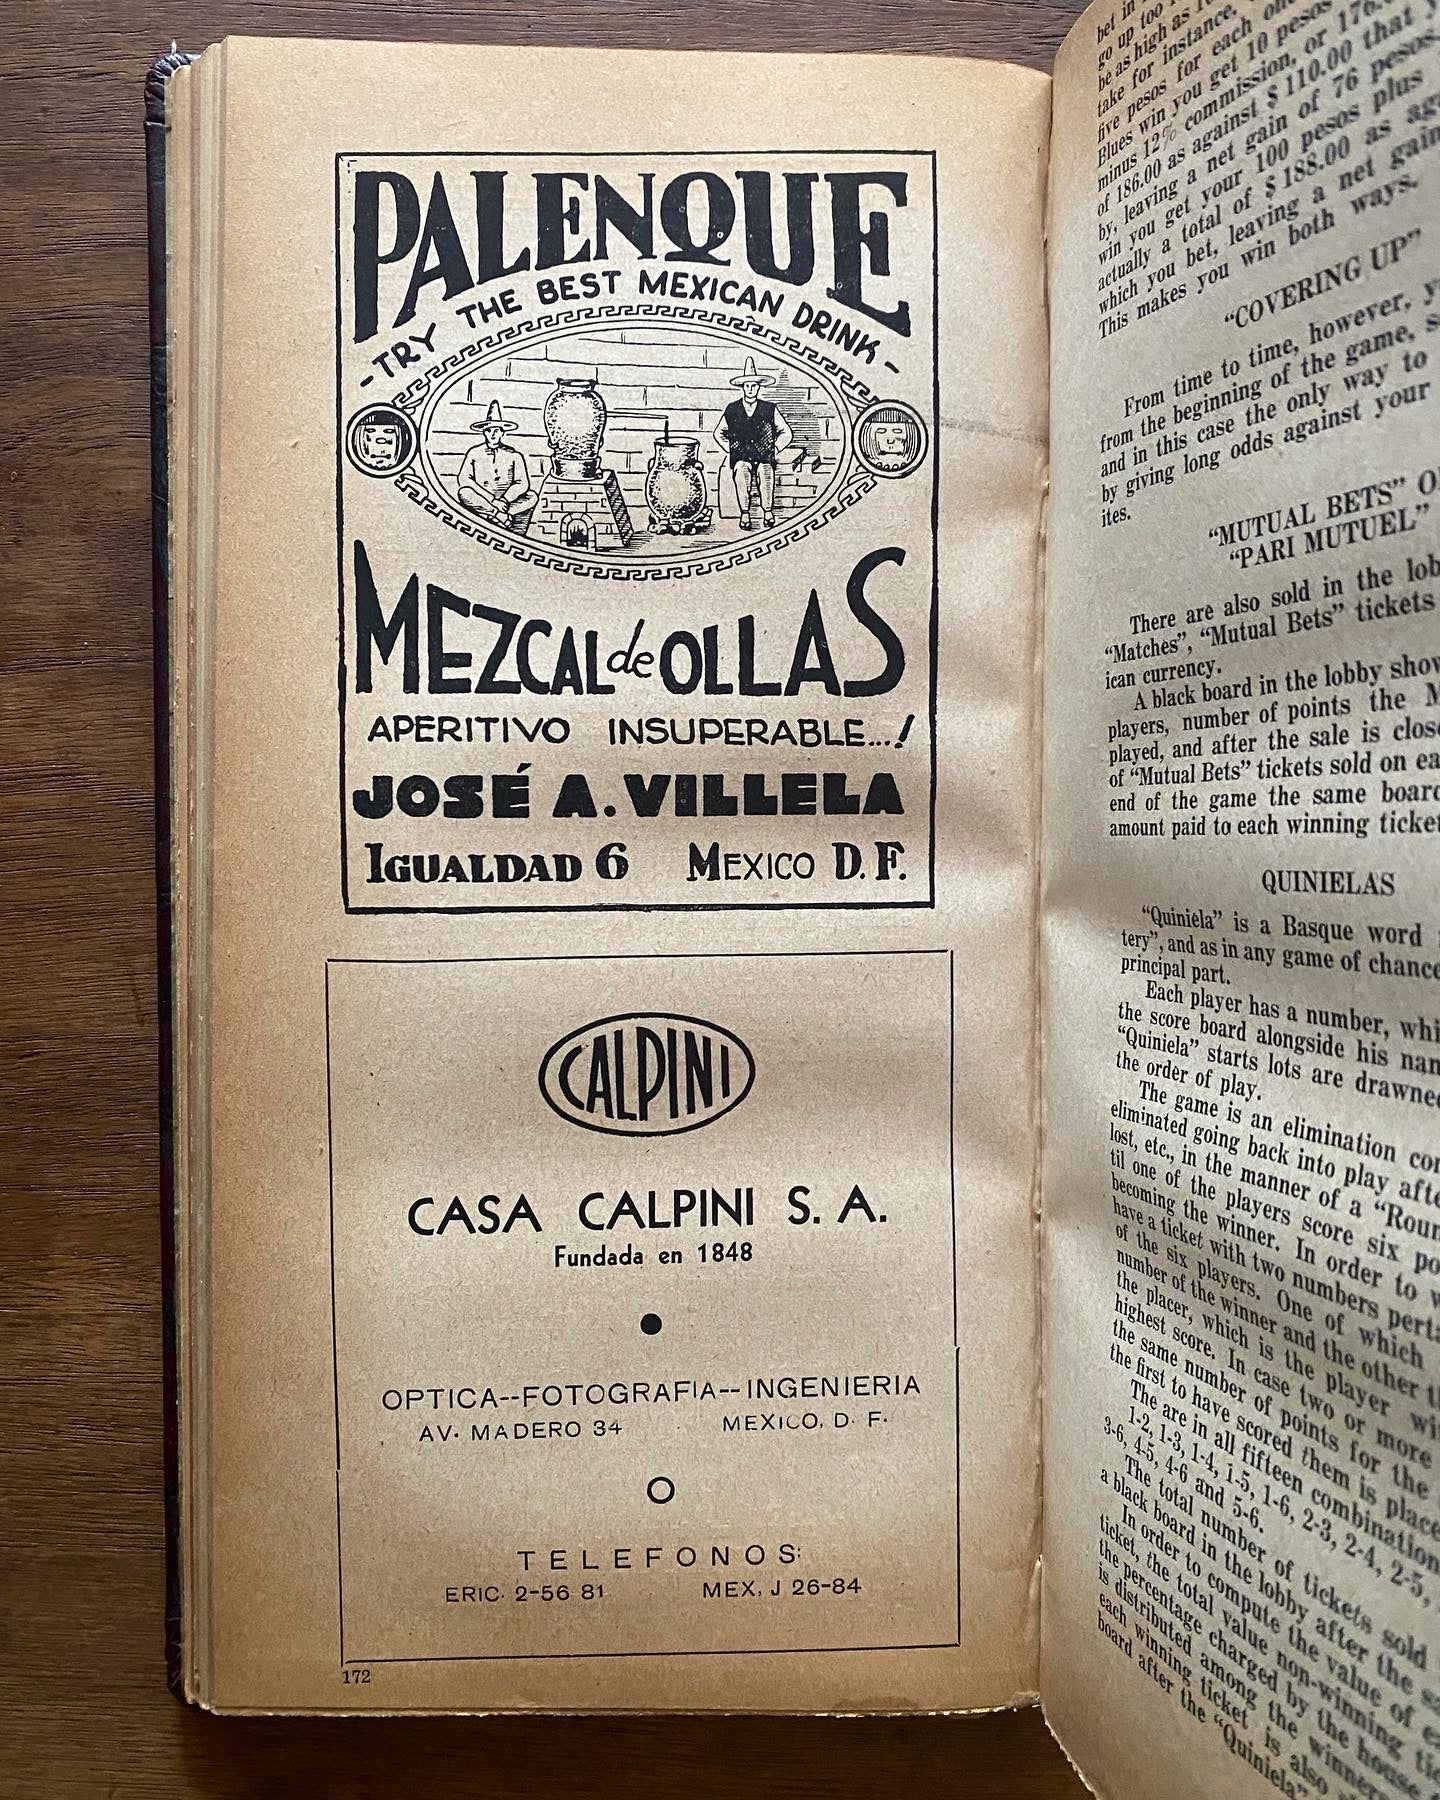 Very rare Mexican book “Guia de Turismo y Carreteras en Mexico. 1937 “